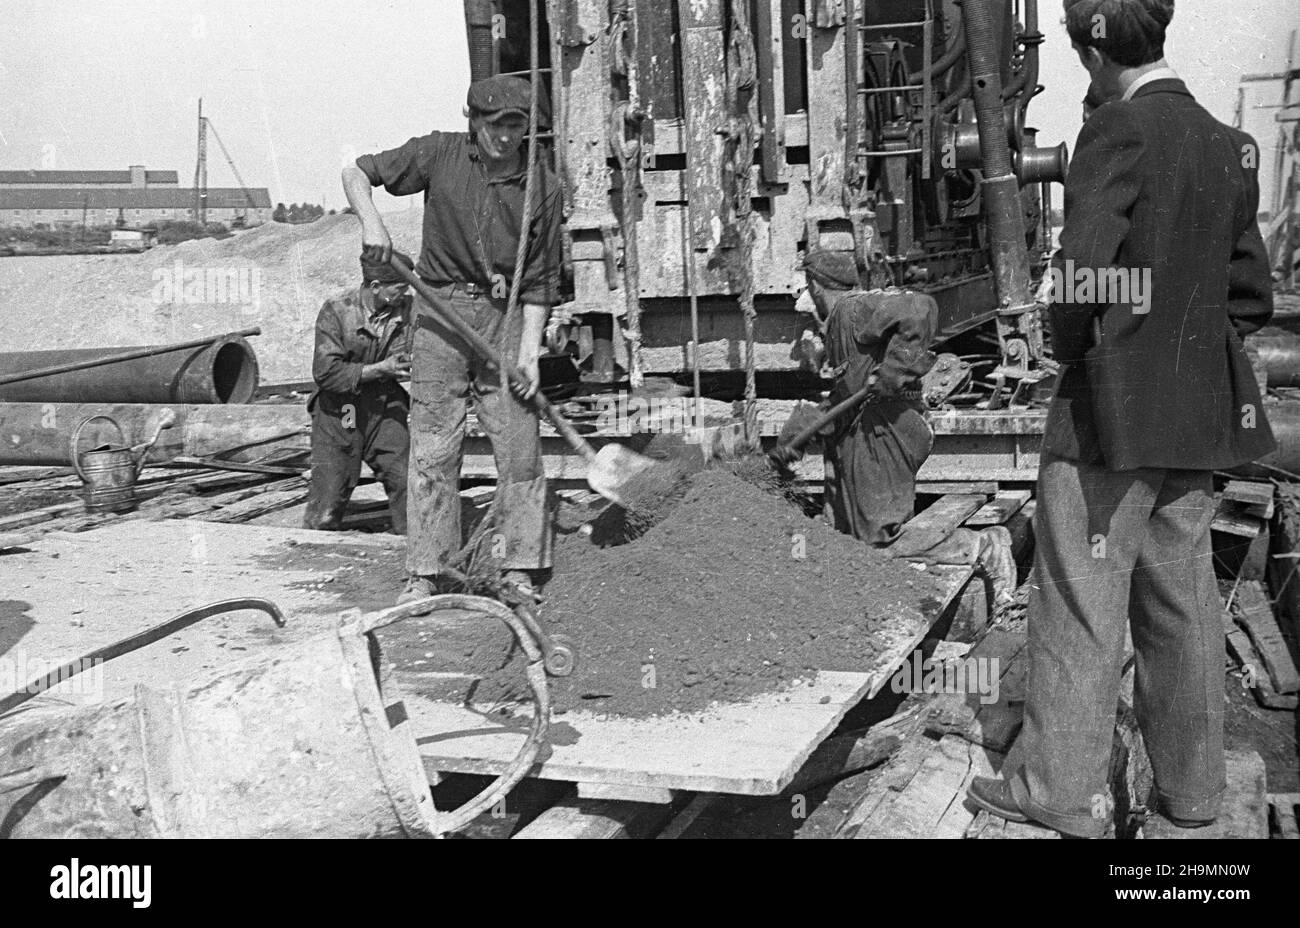 Szczecin, 1948-10. Port Szczecin. Budowa nowego basenu i nabrze¿a prze³adunków masowych. W torfiaste pod³o¿e wbijane s¹ pale, na nich oparte zostan¹ fundamenty pod dŸwigi. Nz.  obs³uga parowego kafara. mw  PAP    Dok³adny dzieñ wydarzenia nieustalony.      Szczecin, Oct. 1948. The  Szczecin port. The construction of a new basin and the cargo re-loading wharf. Pillars are driven into the ground of peat to serve as cranes' founations. Pictured: servicing a steam pile-driver.  mw  PAP Stock Photo